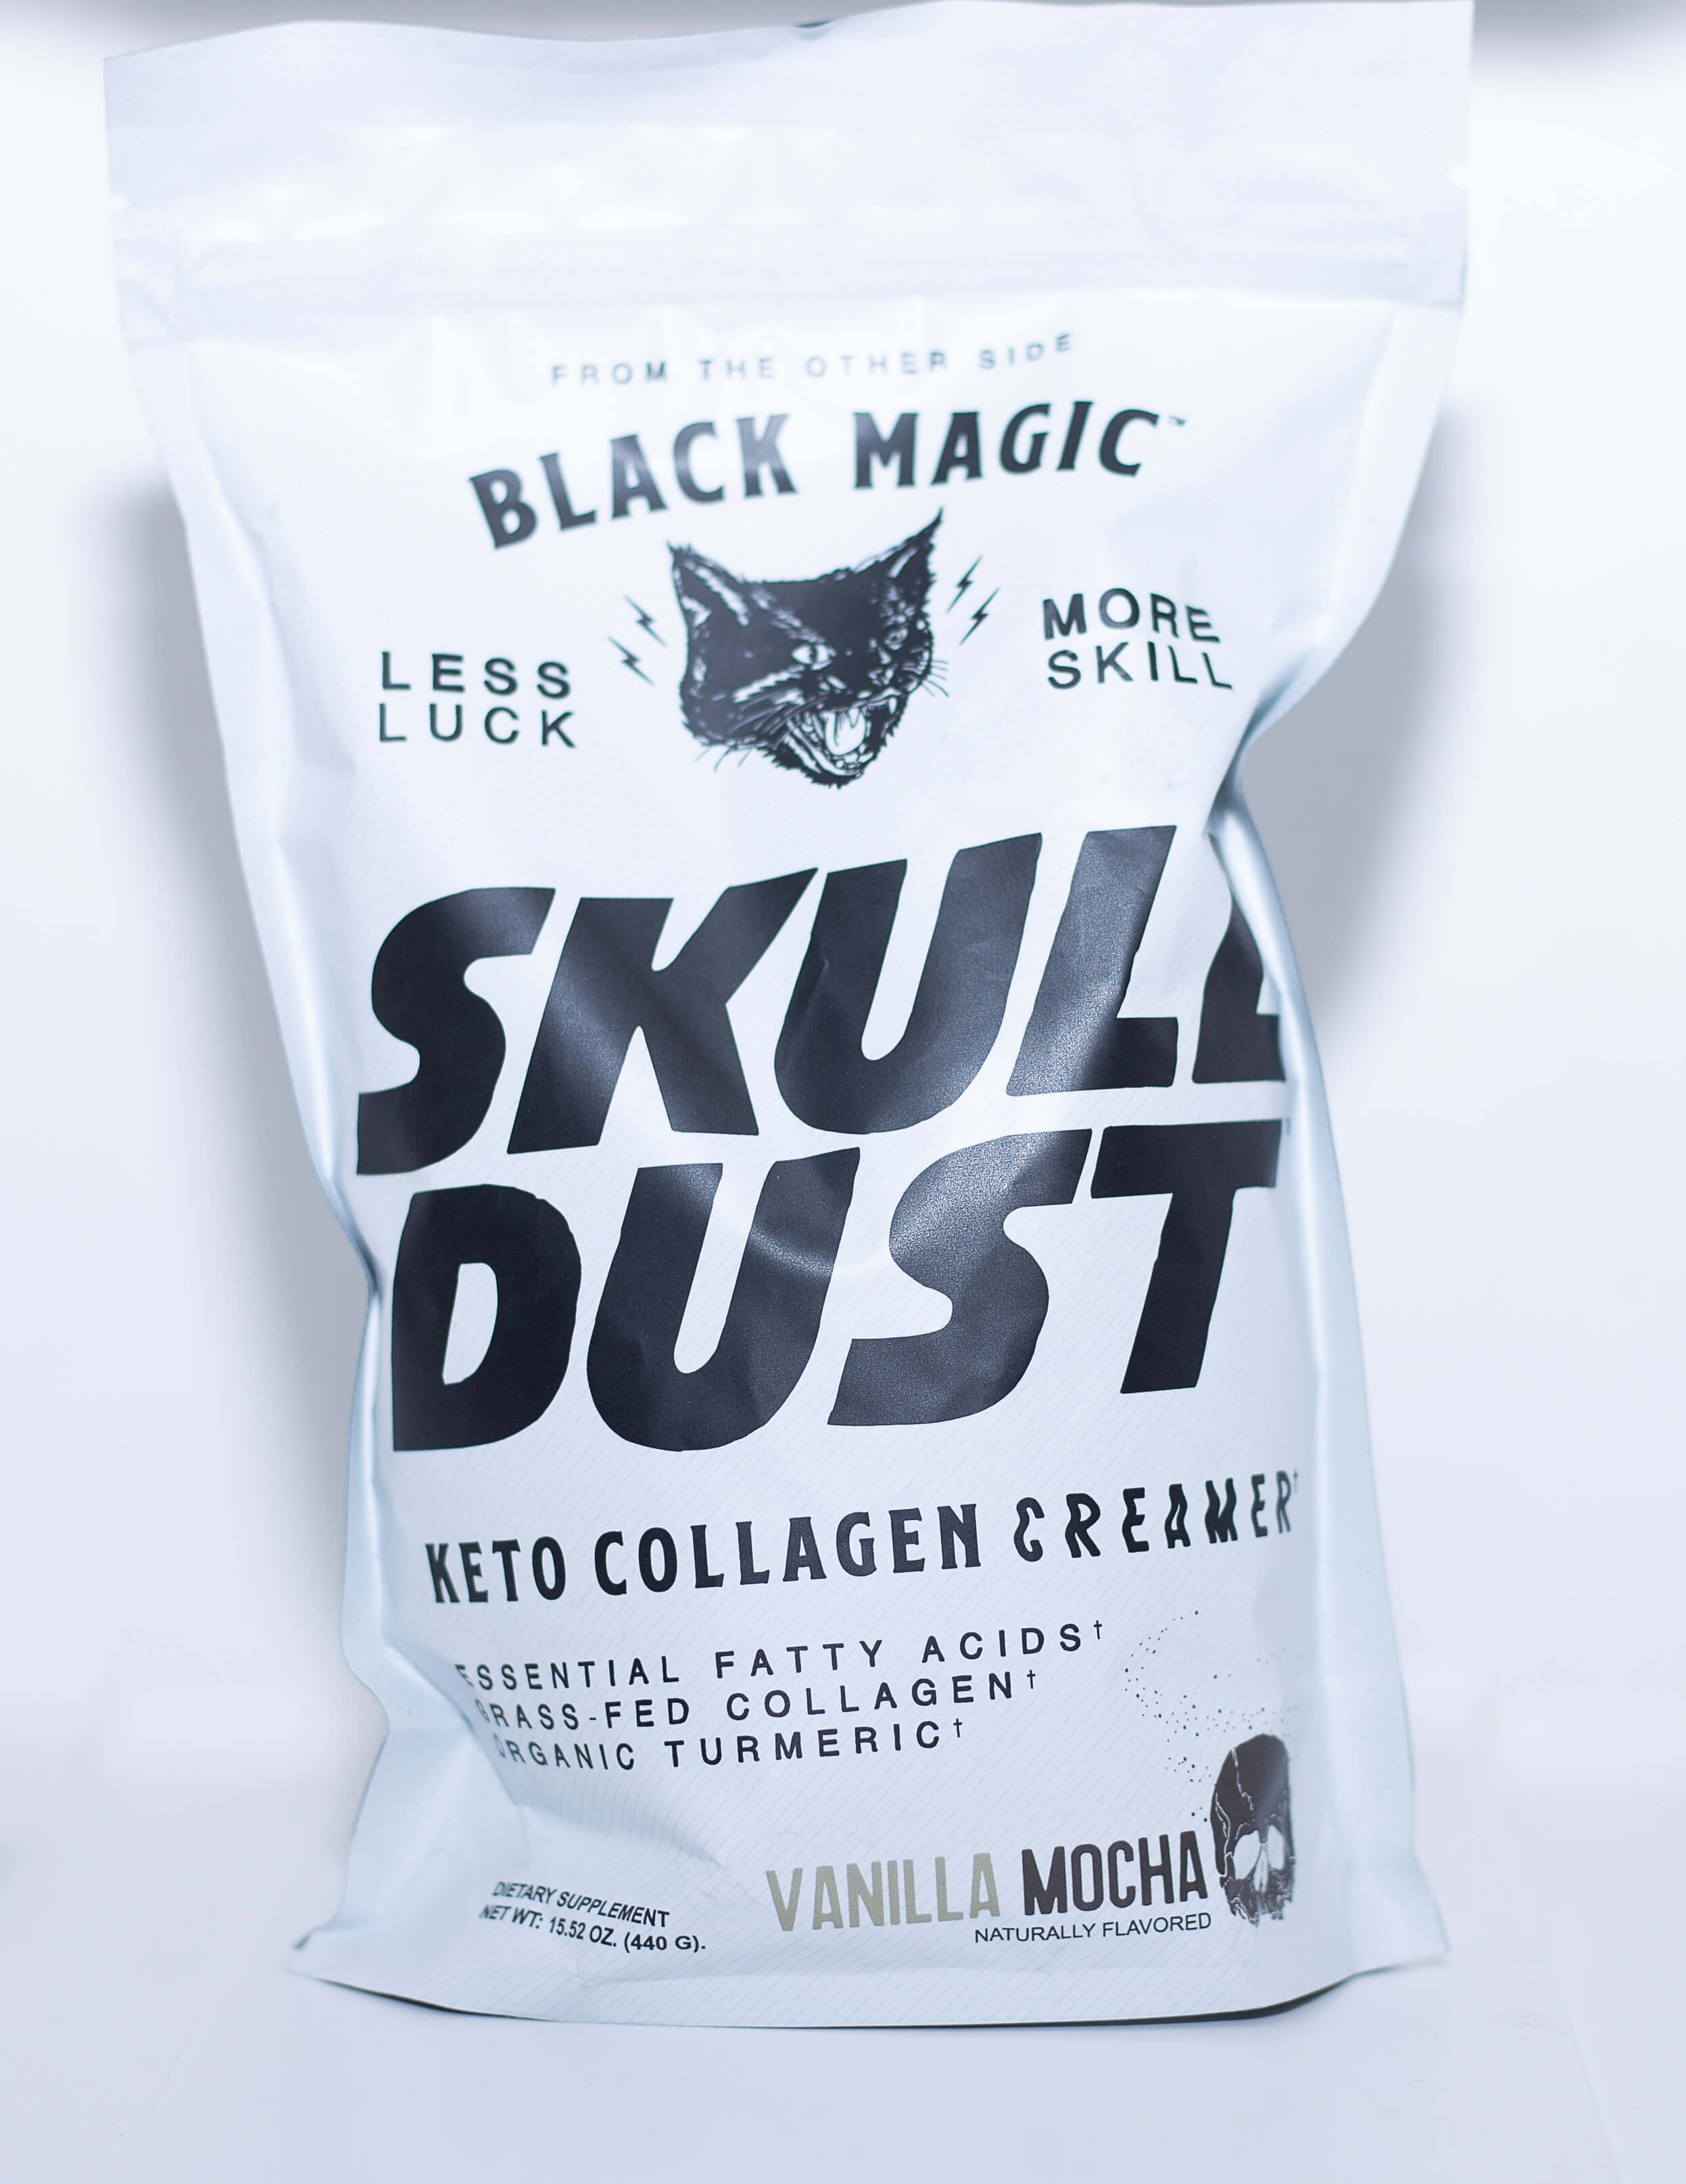 Black Magic Dust